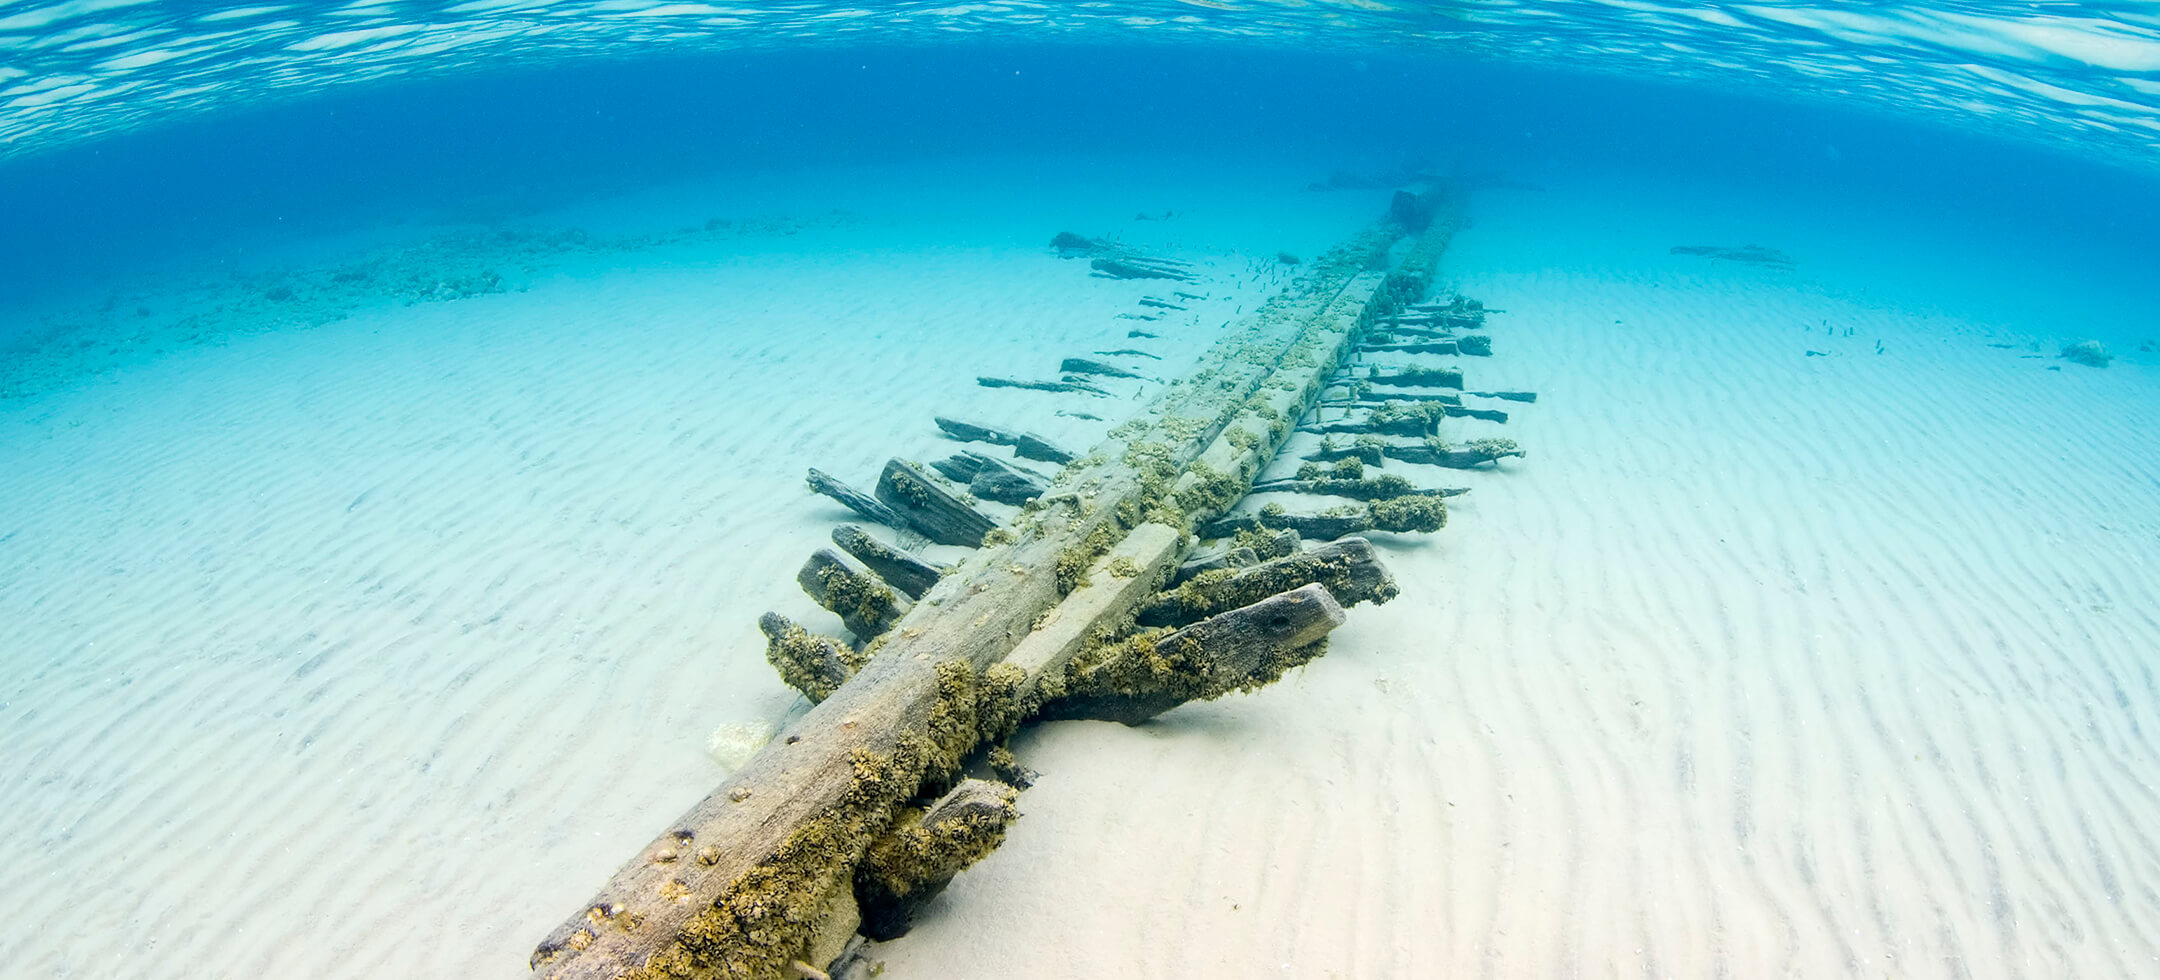 Selvick Shipwreck by Chris Doyal